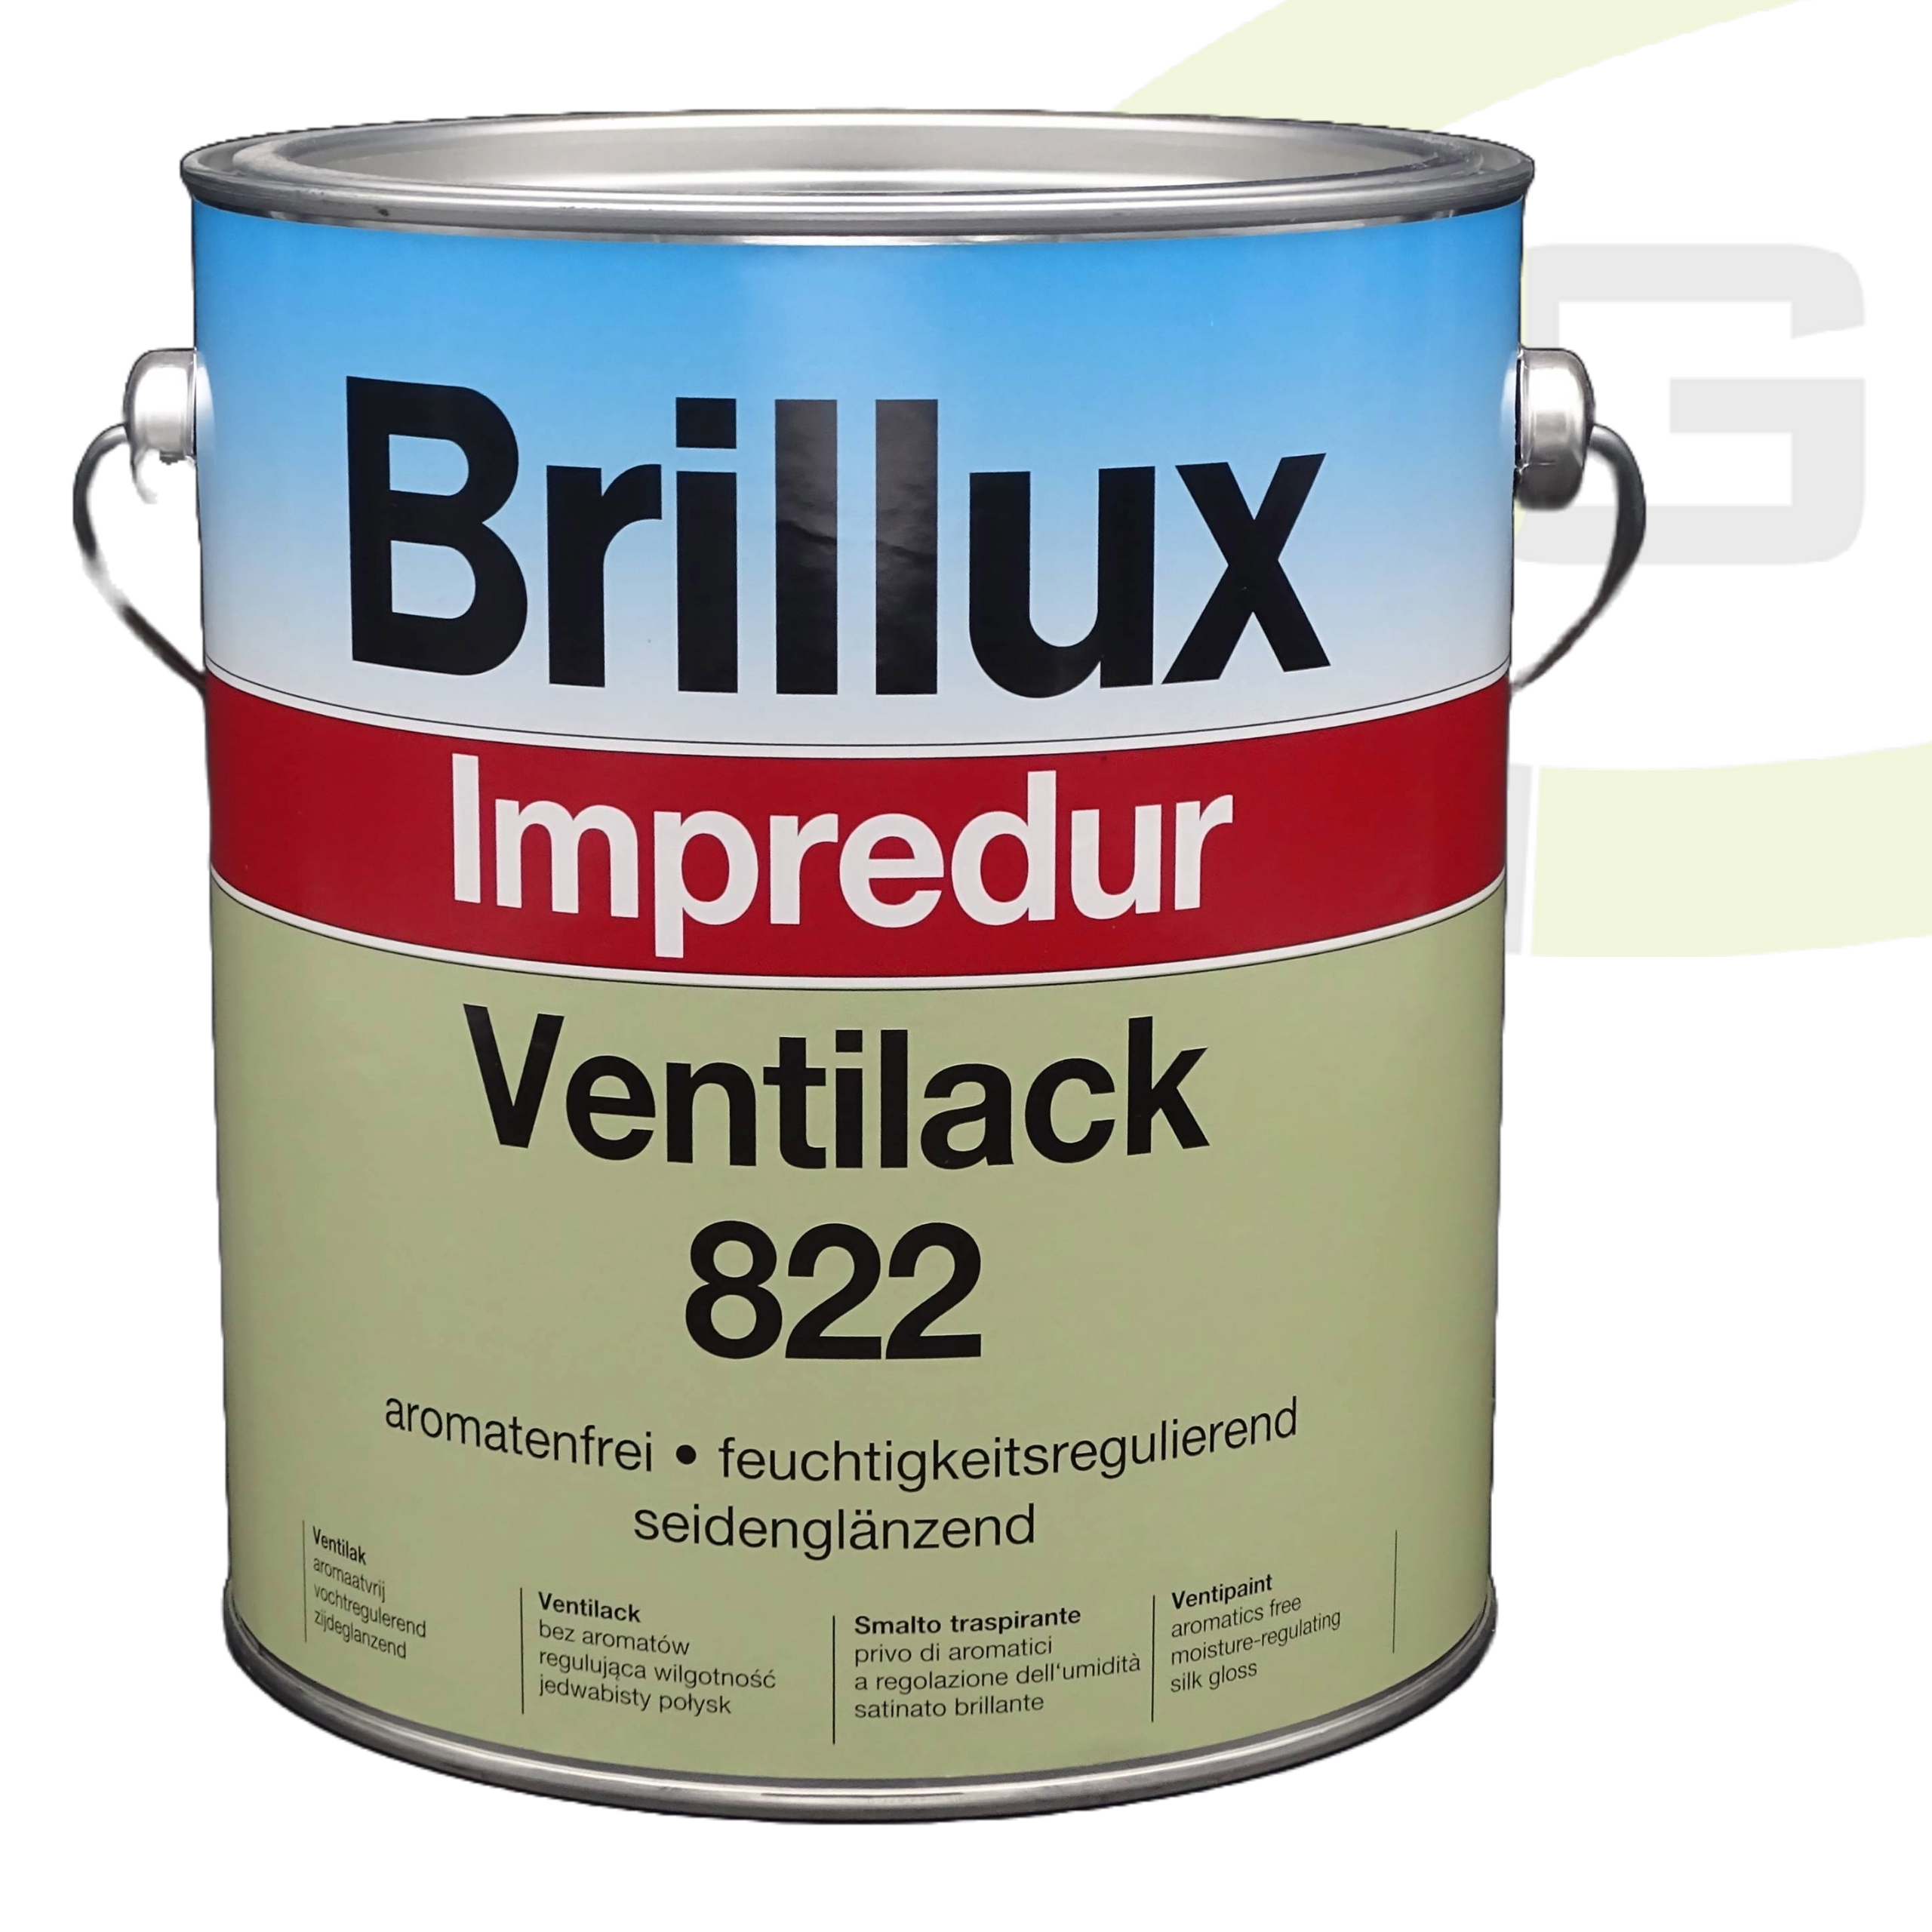 Brillux Impredur Ventilack 822 seidenglänzend - 3.00 LTR / Fenster- und Türenlack + Grund- und Endlack